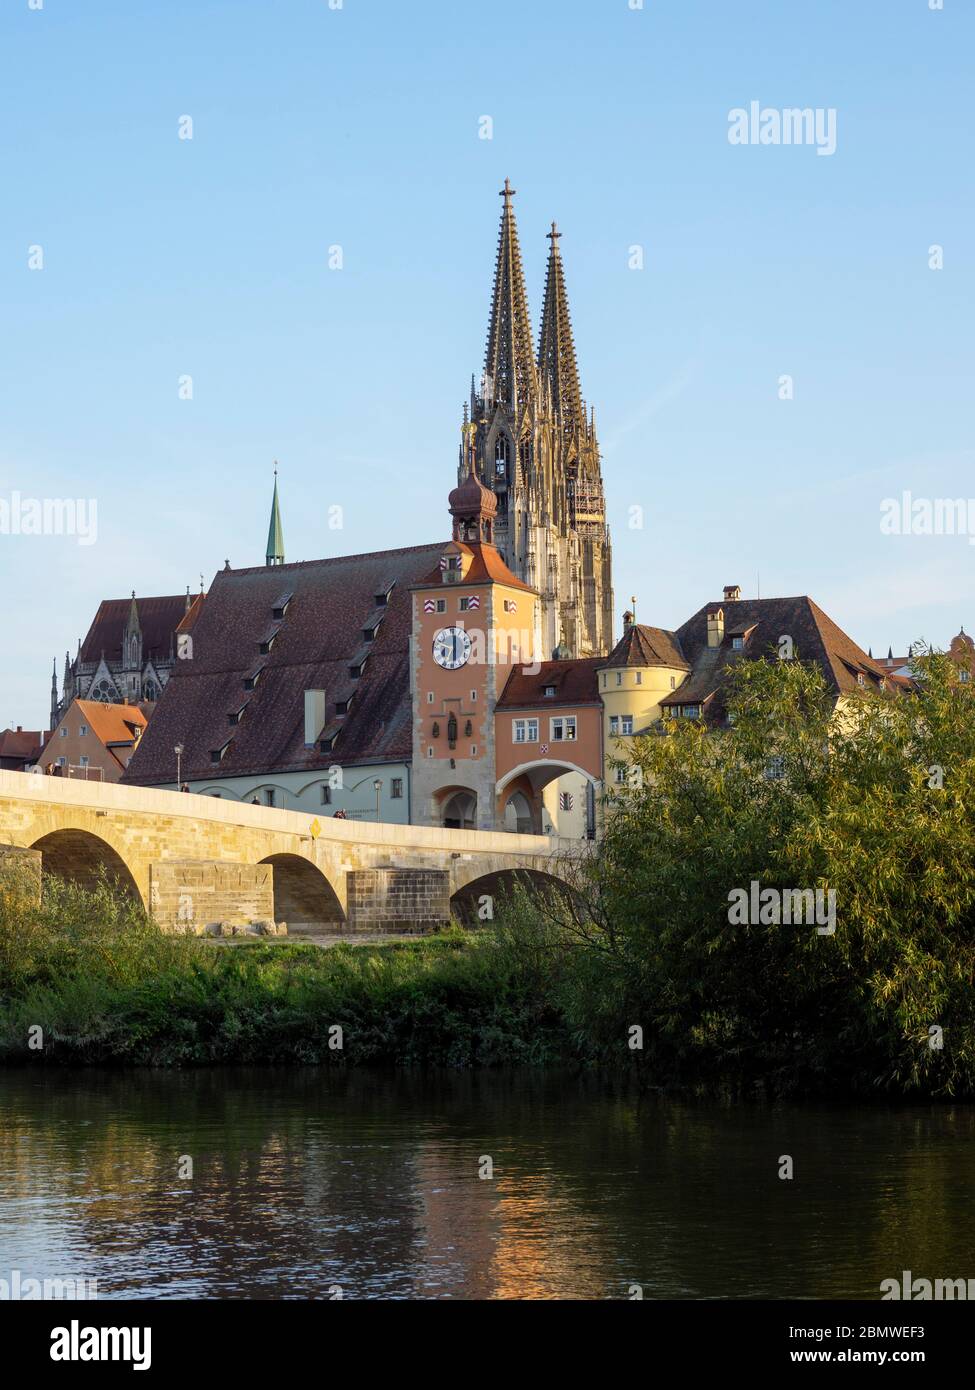 Steinerne Brücke, Donau, Altstadt von Regensburg mit Dom, Unesco Welterbe, Bayern, Deutschland Foto Stock